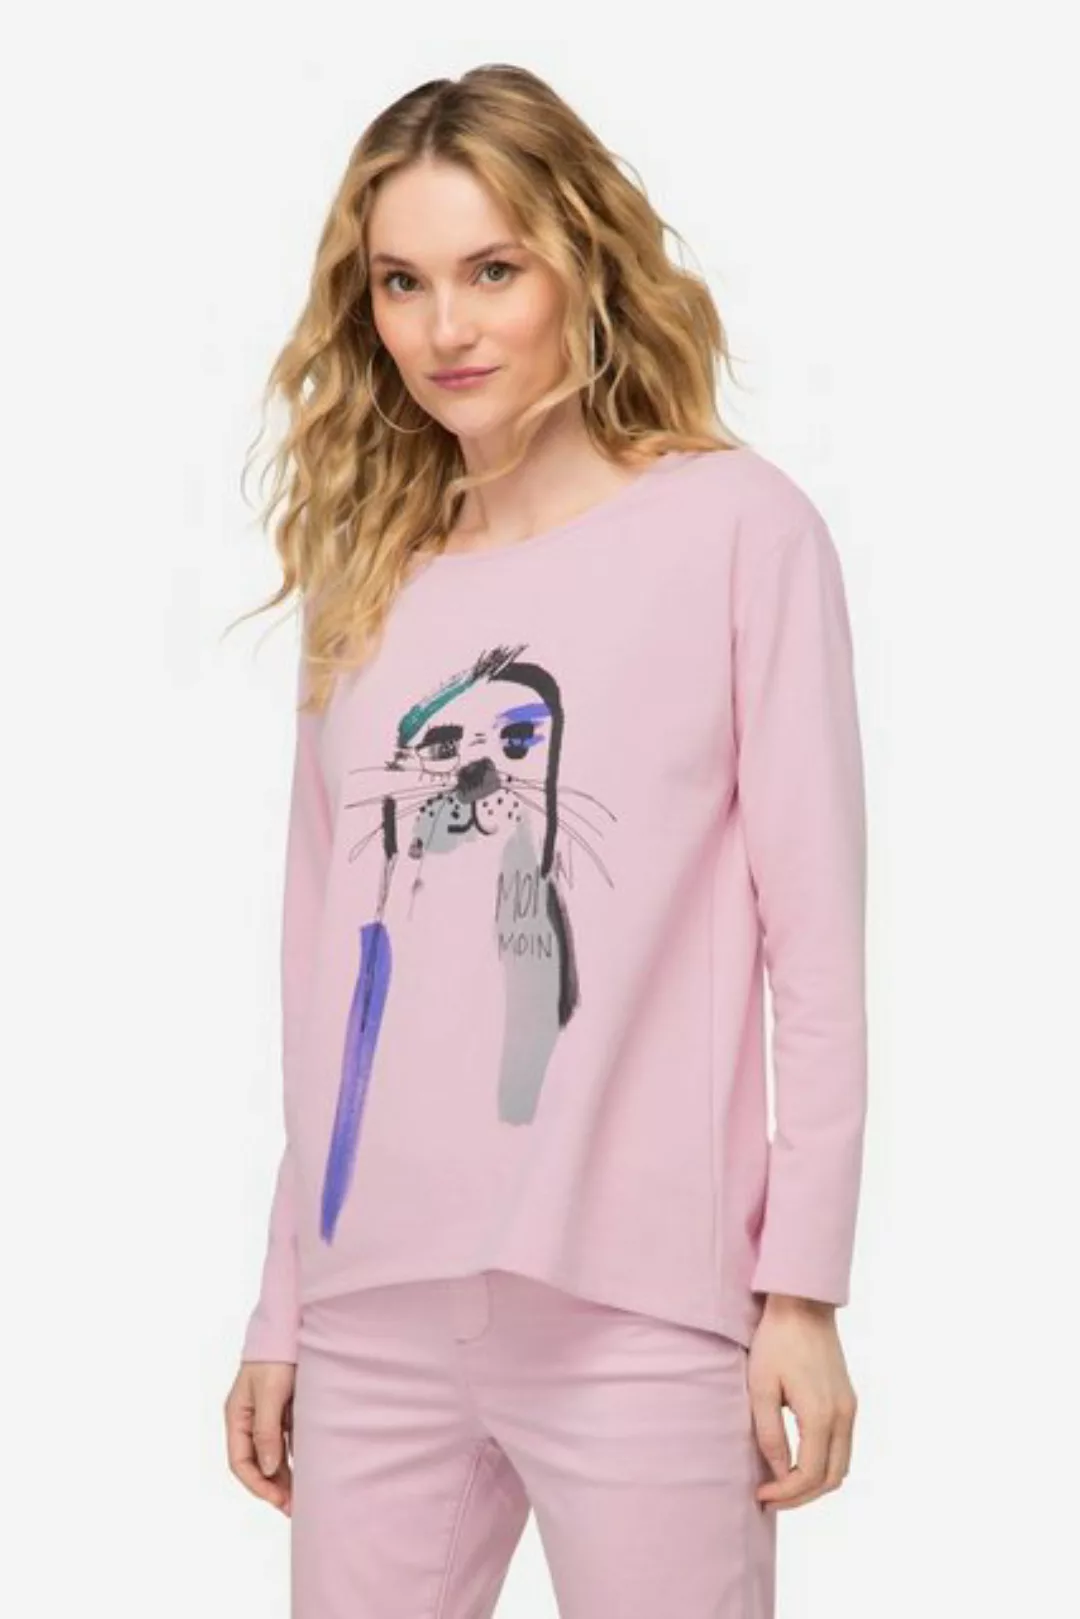 Laurasøn Sweatshirt Sweatshirt oversized Robben Print Rundhals Langarm günstig online kaufen